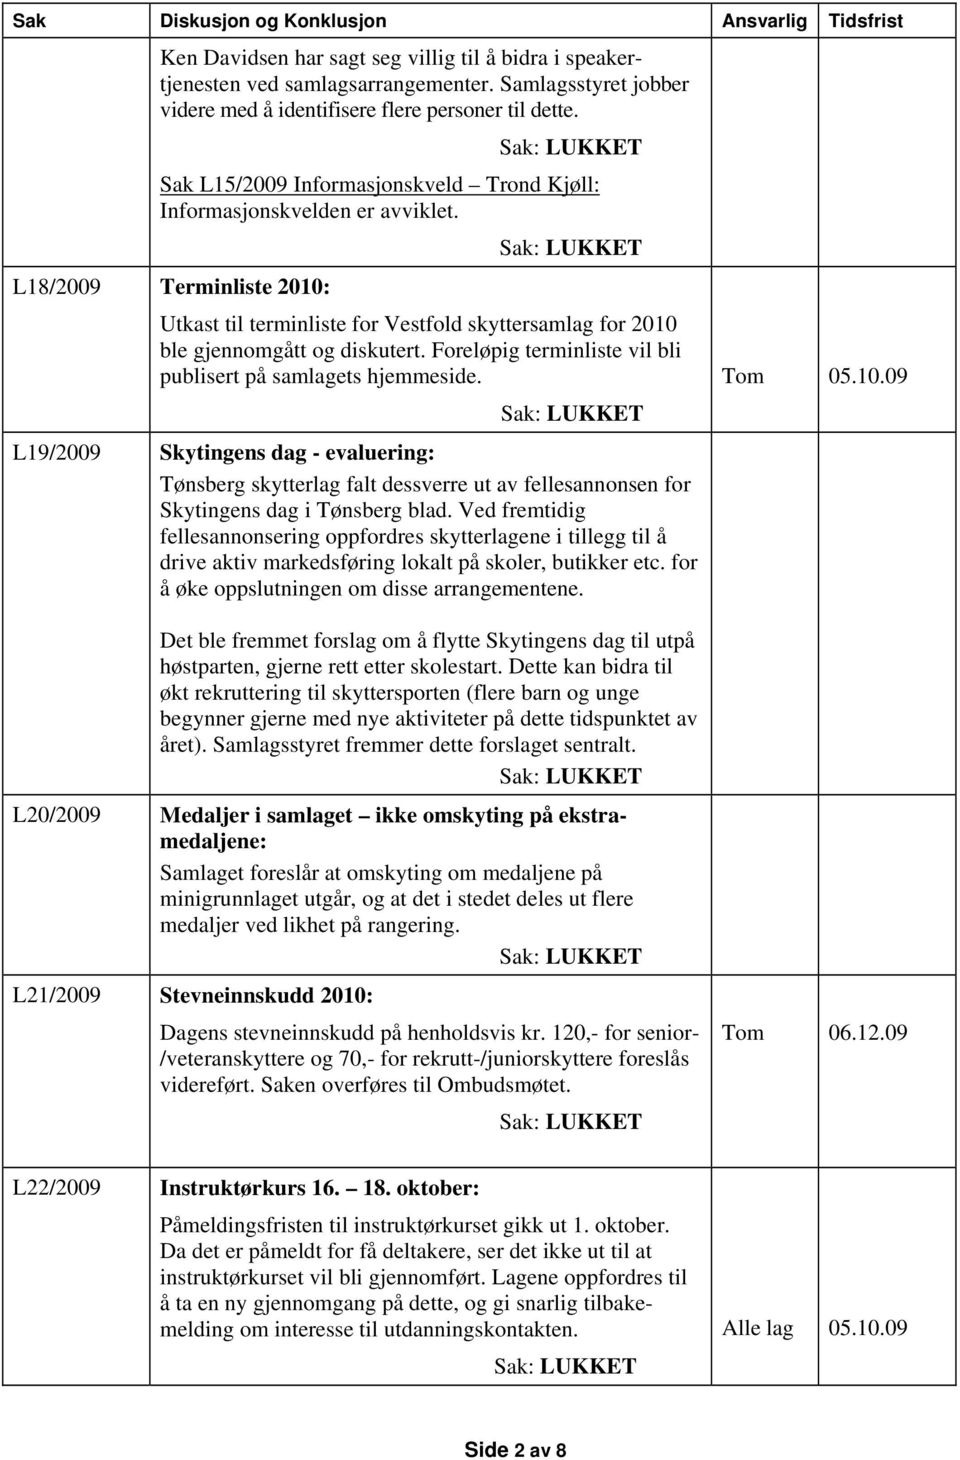 Foreløpig terminliste vil bli publisert på samlagets hjemmeside. L19/2009 Skytingens dag - evaluering: Tønsberg skytterlag falt dessverre ut av fellesannonsen for Skytingens dag i Tønsberg blad.